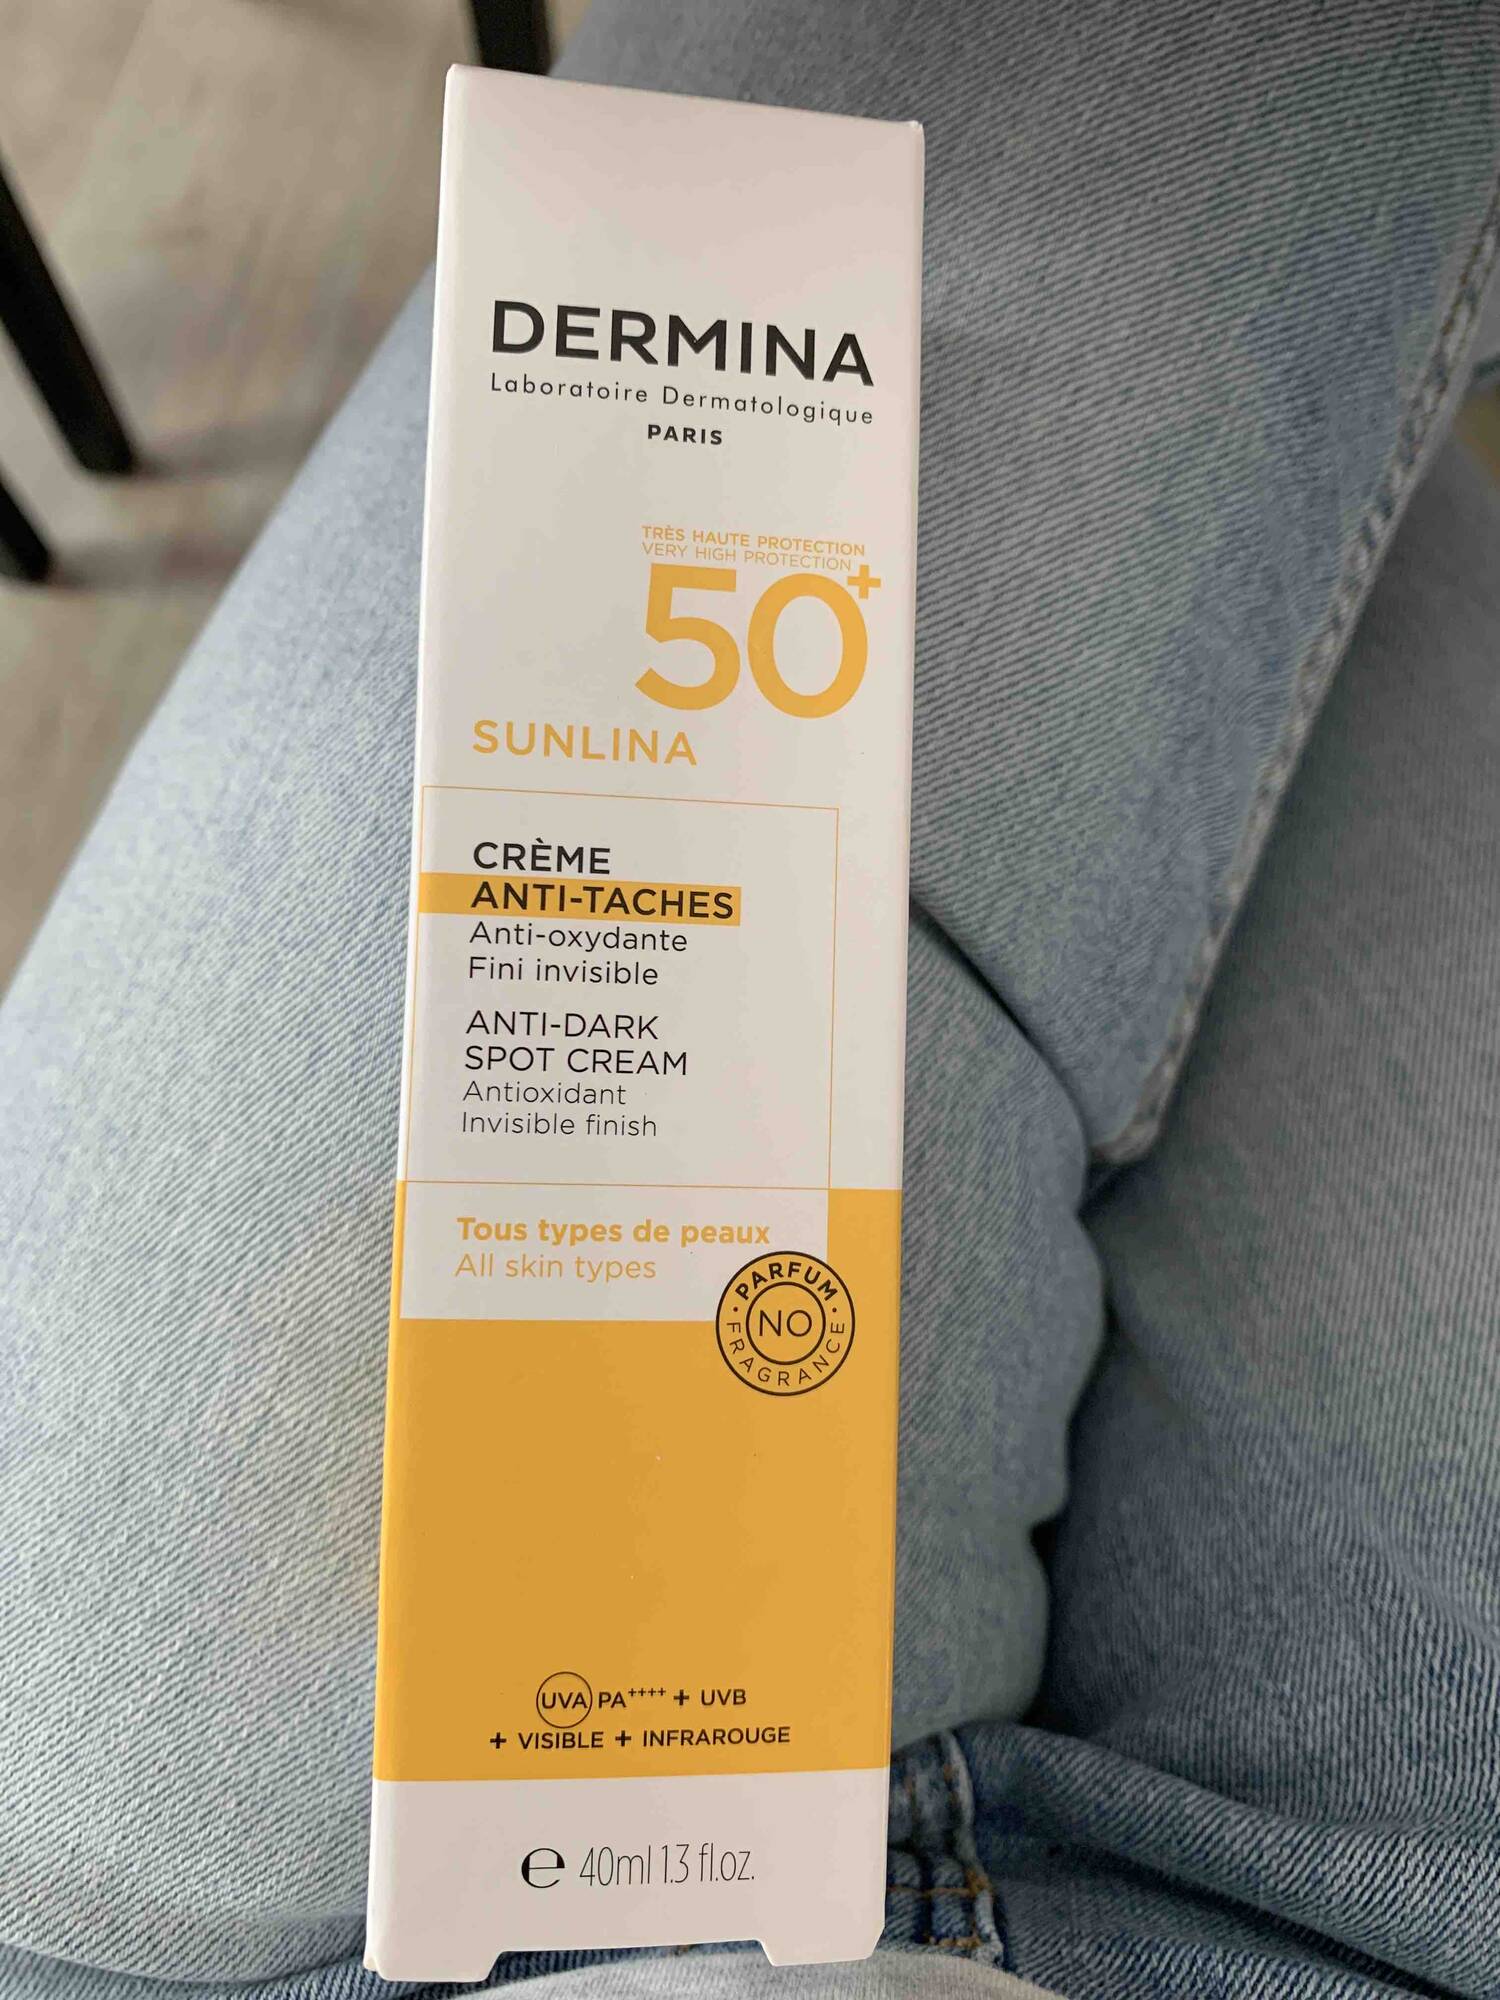 DERMINA - Sunlina - Crème anti-taches SPF 50+